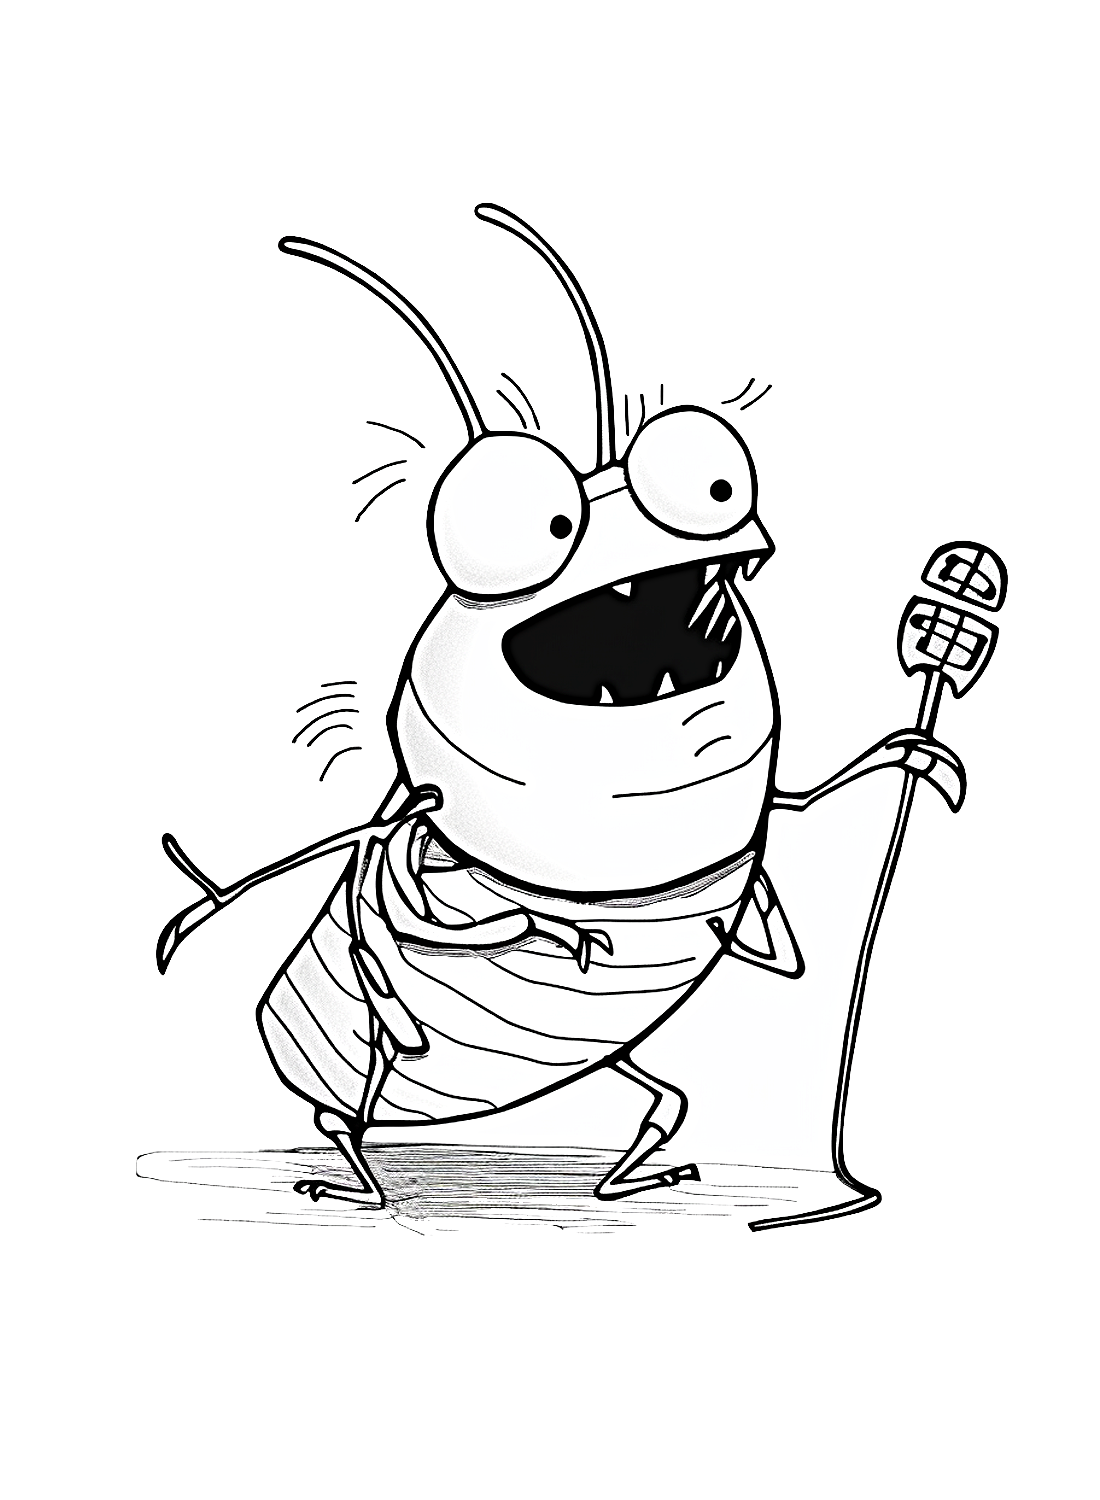 蟑螂的歌声来自《蟑螂》